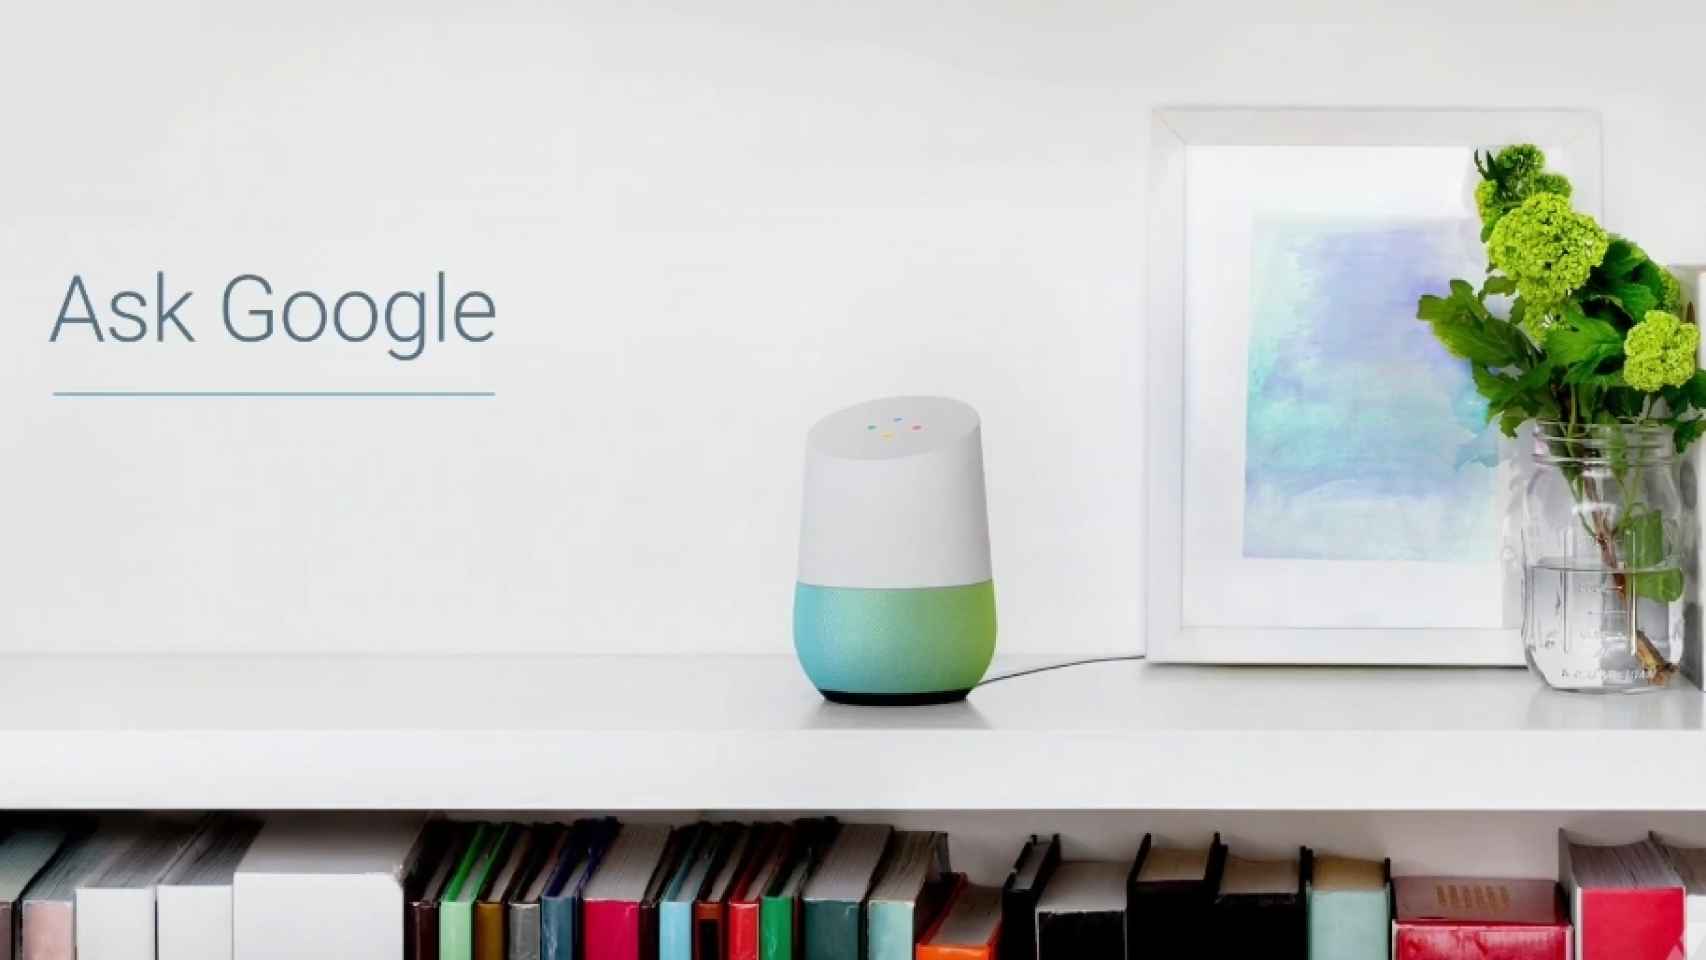 Google Home, el asistente personal llega a tu casa